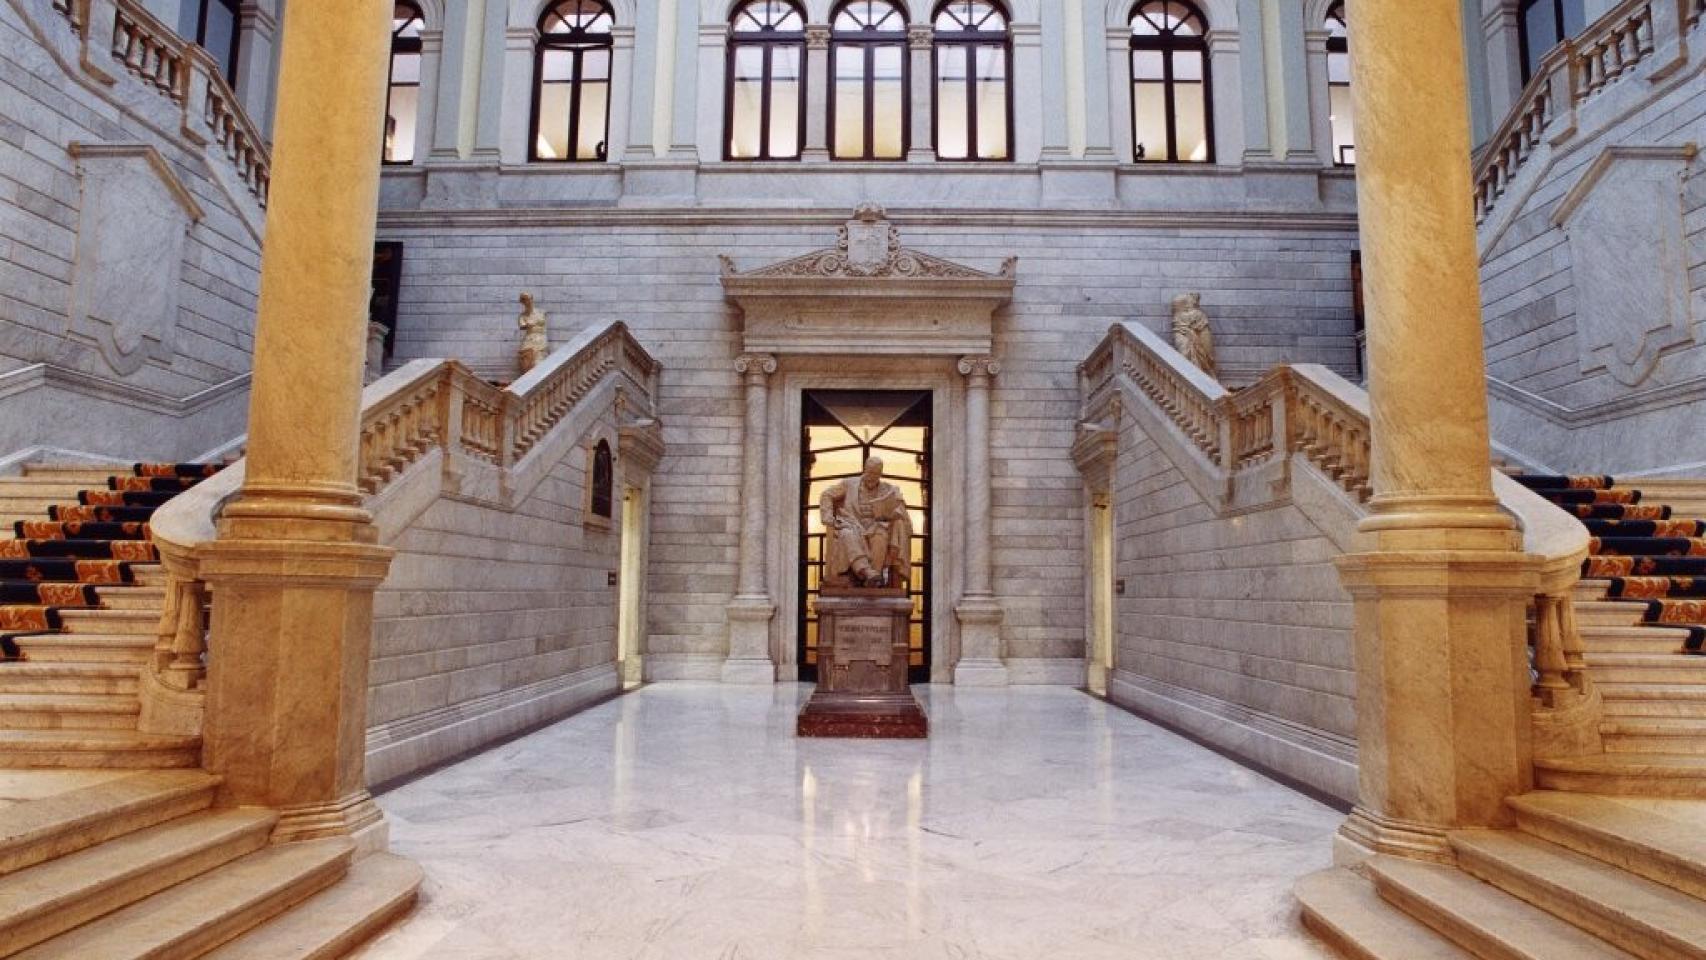 Visita de la Real Biblioteca Nacional - Viajar a Madrid: ¿qué ver? - Foro Madrid